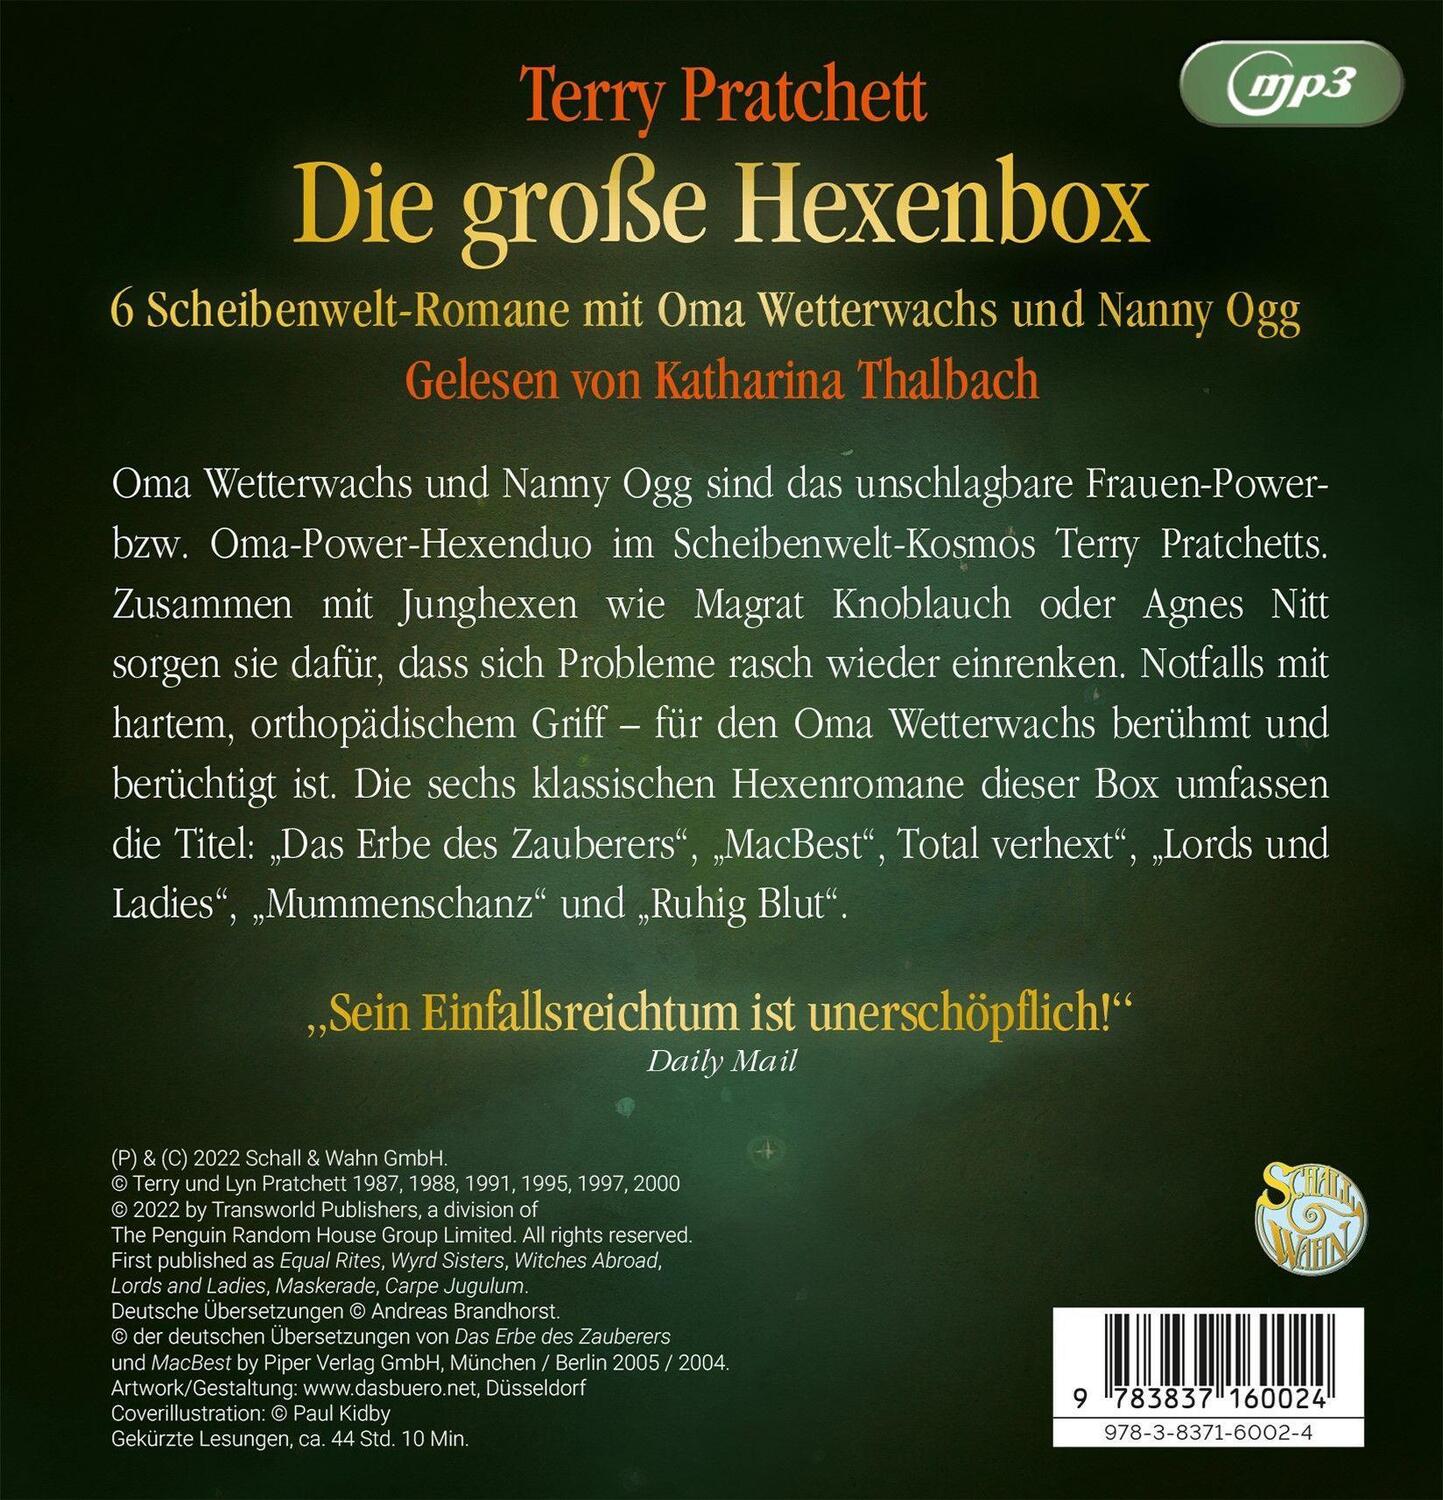 Bild: 9783837160024 | Die große Hexenbox | Schall & Wahn | Terry Pratchett | MP3 | Deutsch